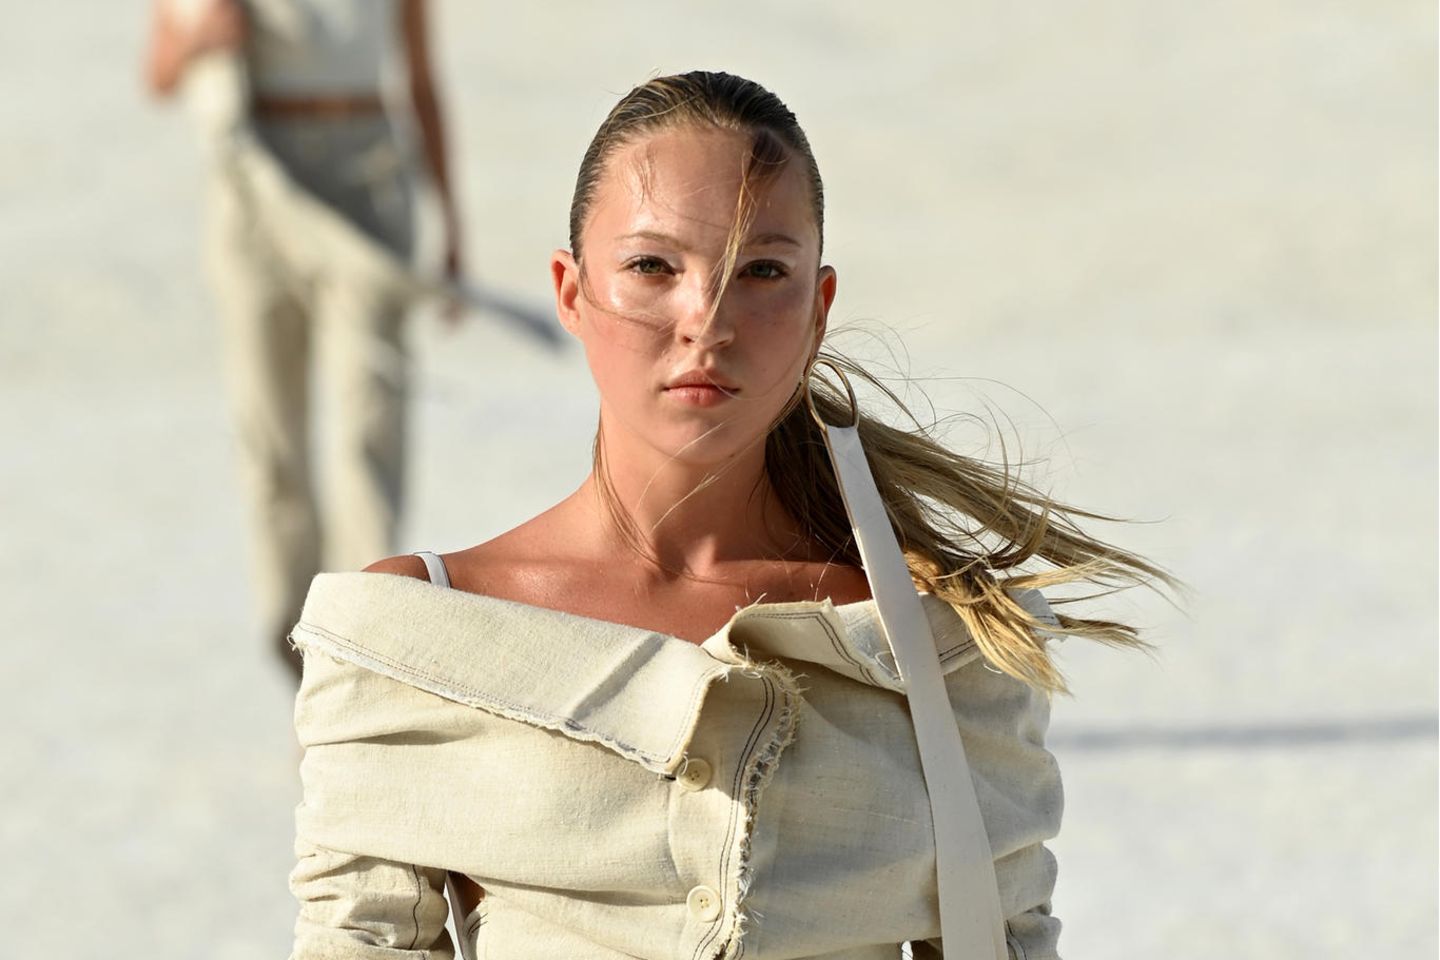 Lila Moss war ebenfalls Teil derJacquemus Fashion Show in Arles – die Tochter von Kate Moss ist noch nicht all zu lange Zeit auf Laufstegen zu sehen. In der Show trägt sie ein beiges Set aus langer Hose und einem distressed Blazer mit Carmen-Ausschnitt.